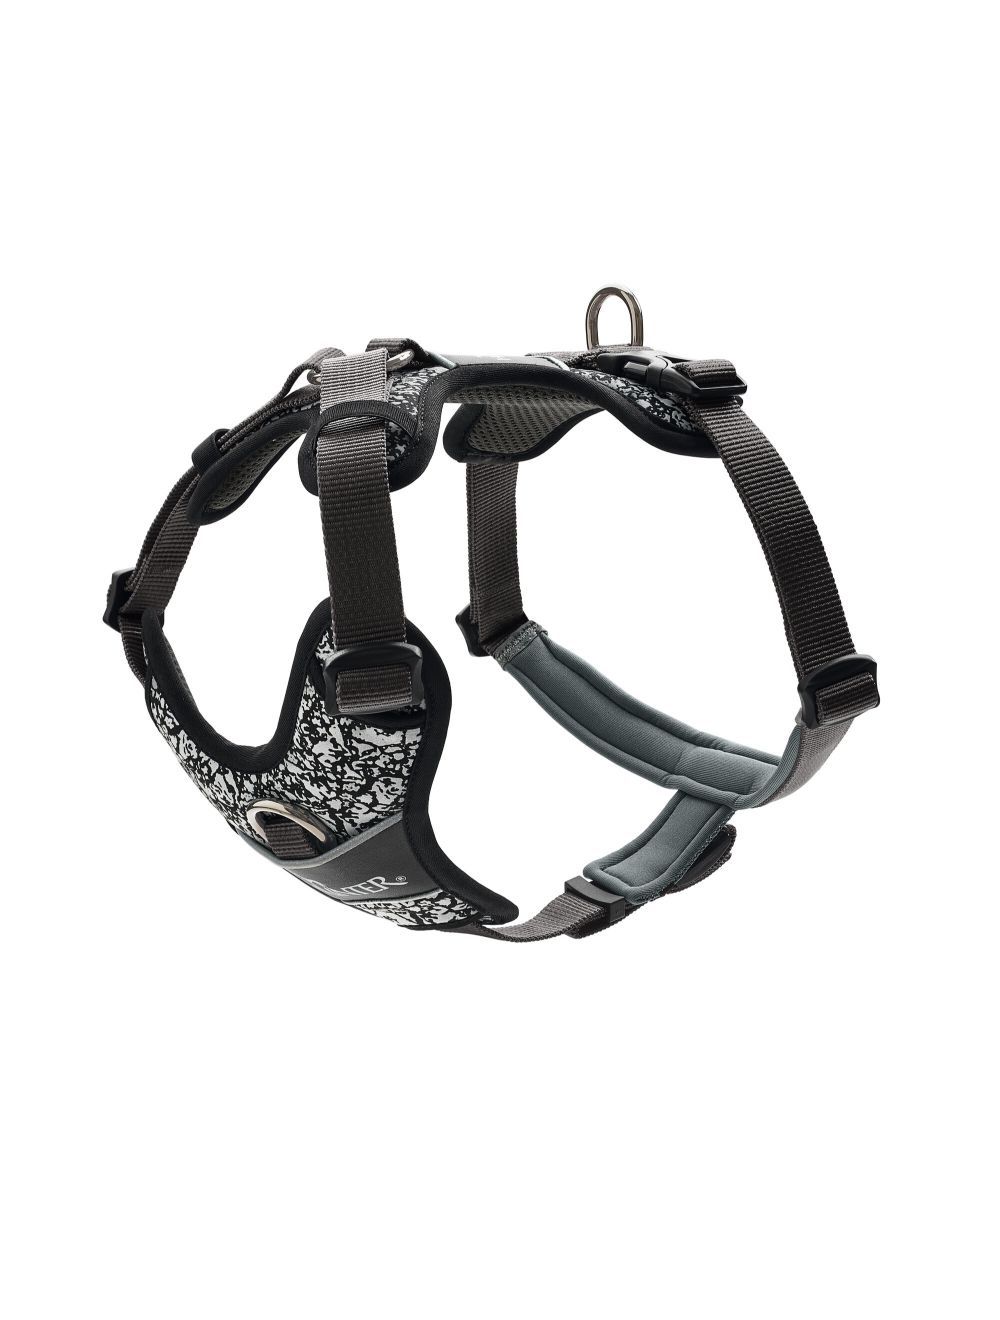 Hunter - Harness Divo Reflect S, black/grey - (68959) - Kjæledyr og utstyr